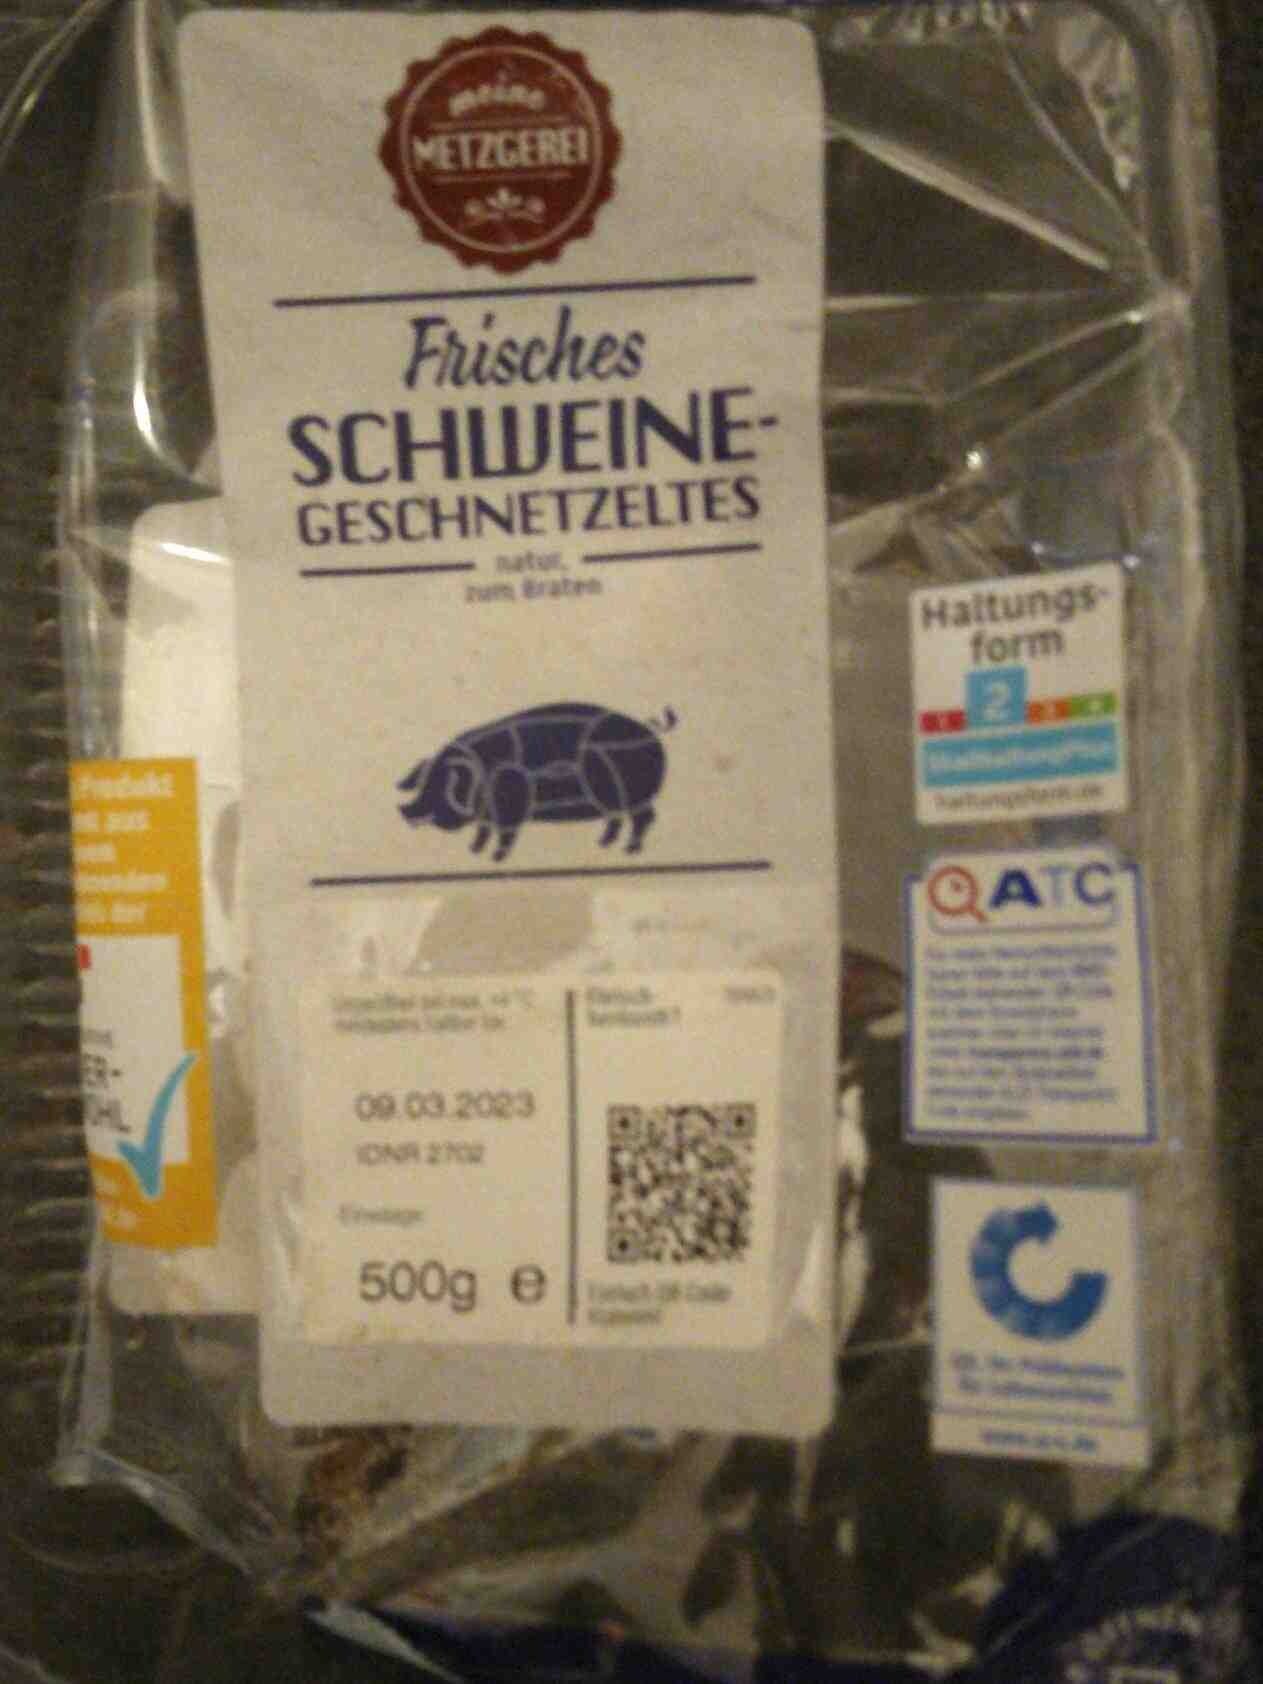 Schweine-Geschnetzeltes frisch - Produkt